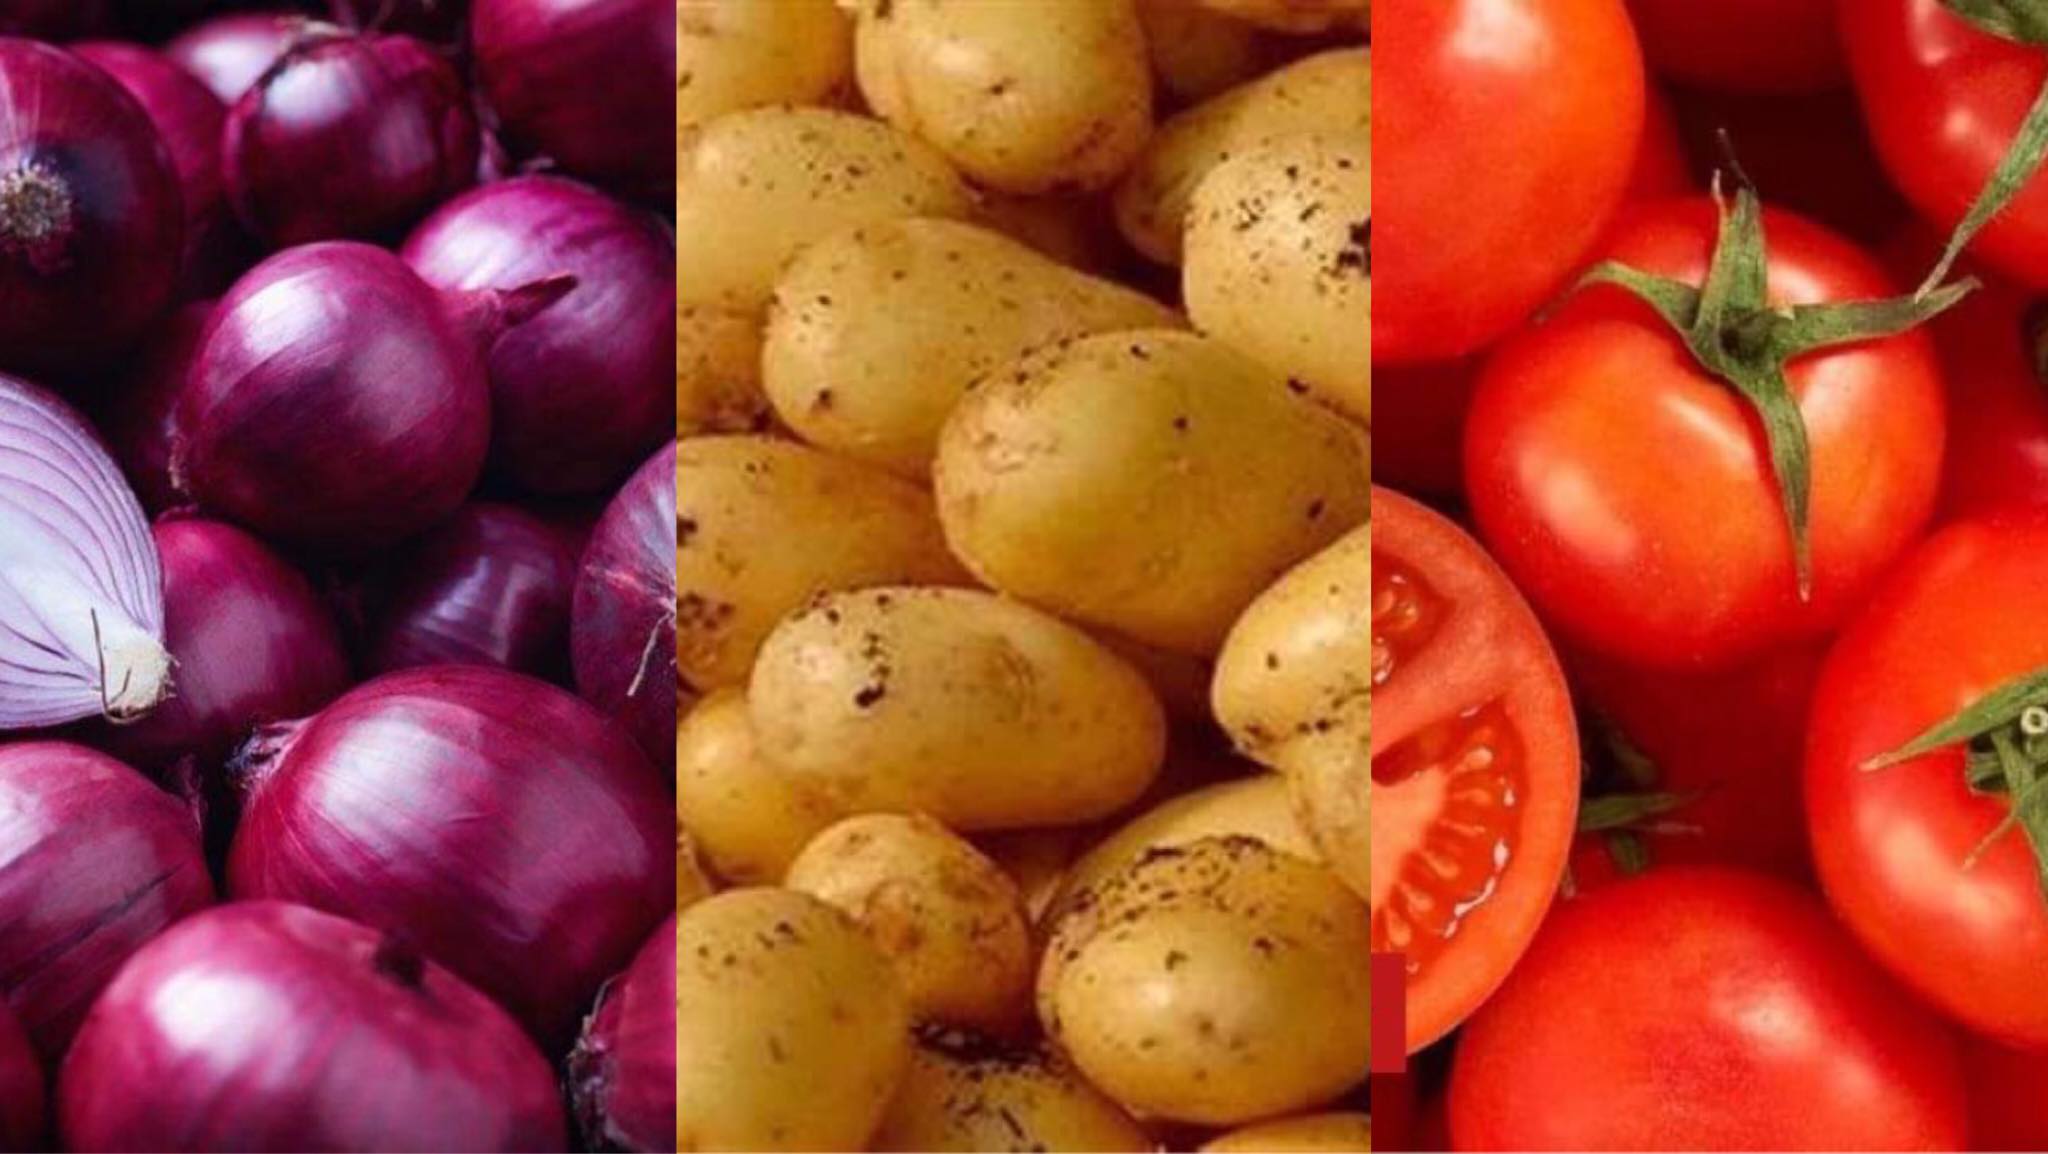 دراسة: الطماطم والبطاطس والبصل أكثر المحاصيل التي يحدث بها أزمات | الفلاح اليوم